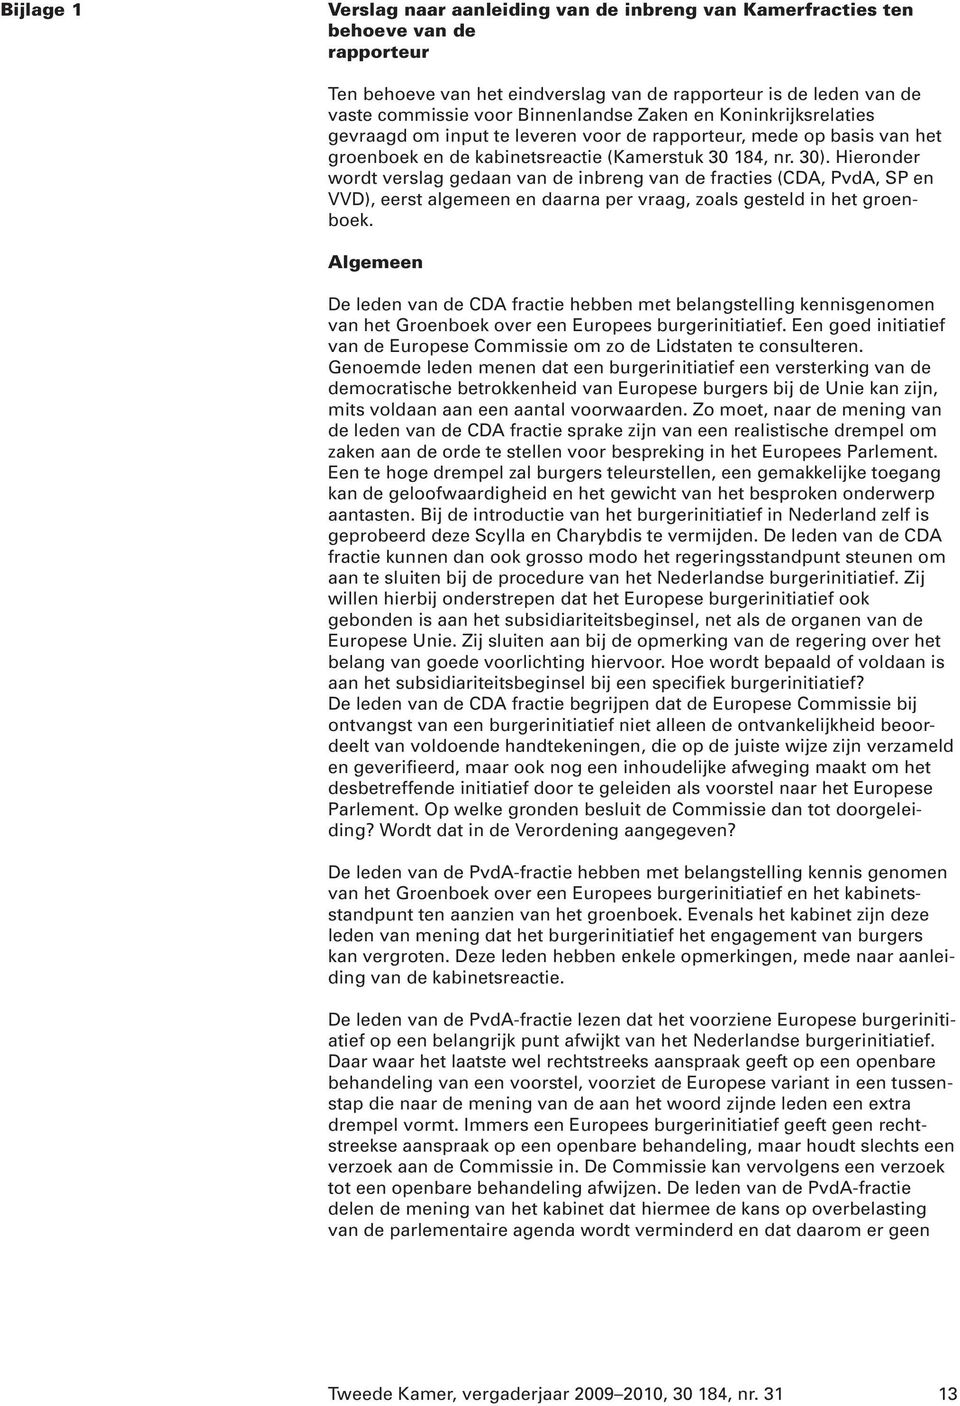 Hieronder wordt verslag gedaan van de inbreng van de fracties (CDA, PvdA, SP en VVD), eerst algemeen en daarna per vraag, zoals gesteld in het groenboek.